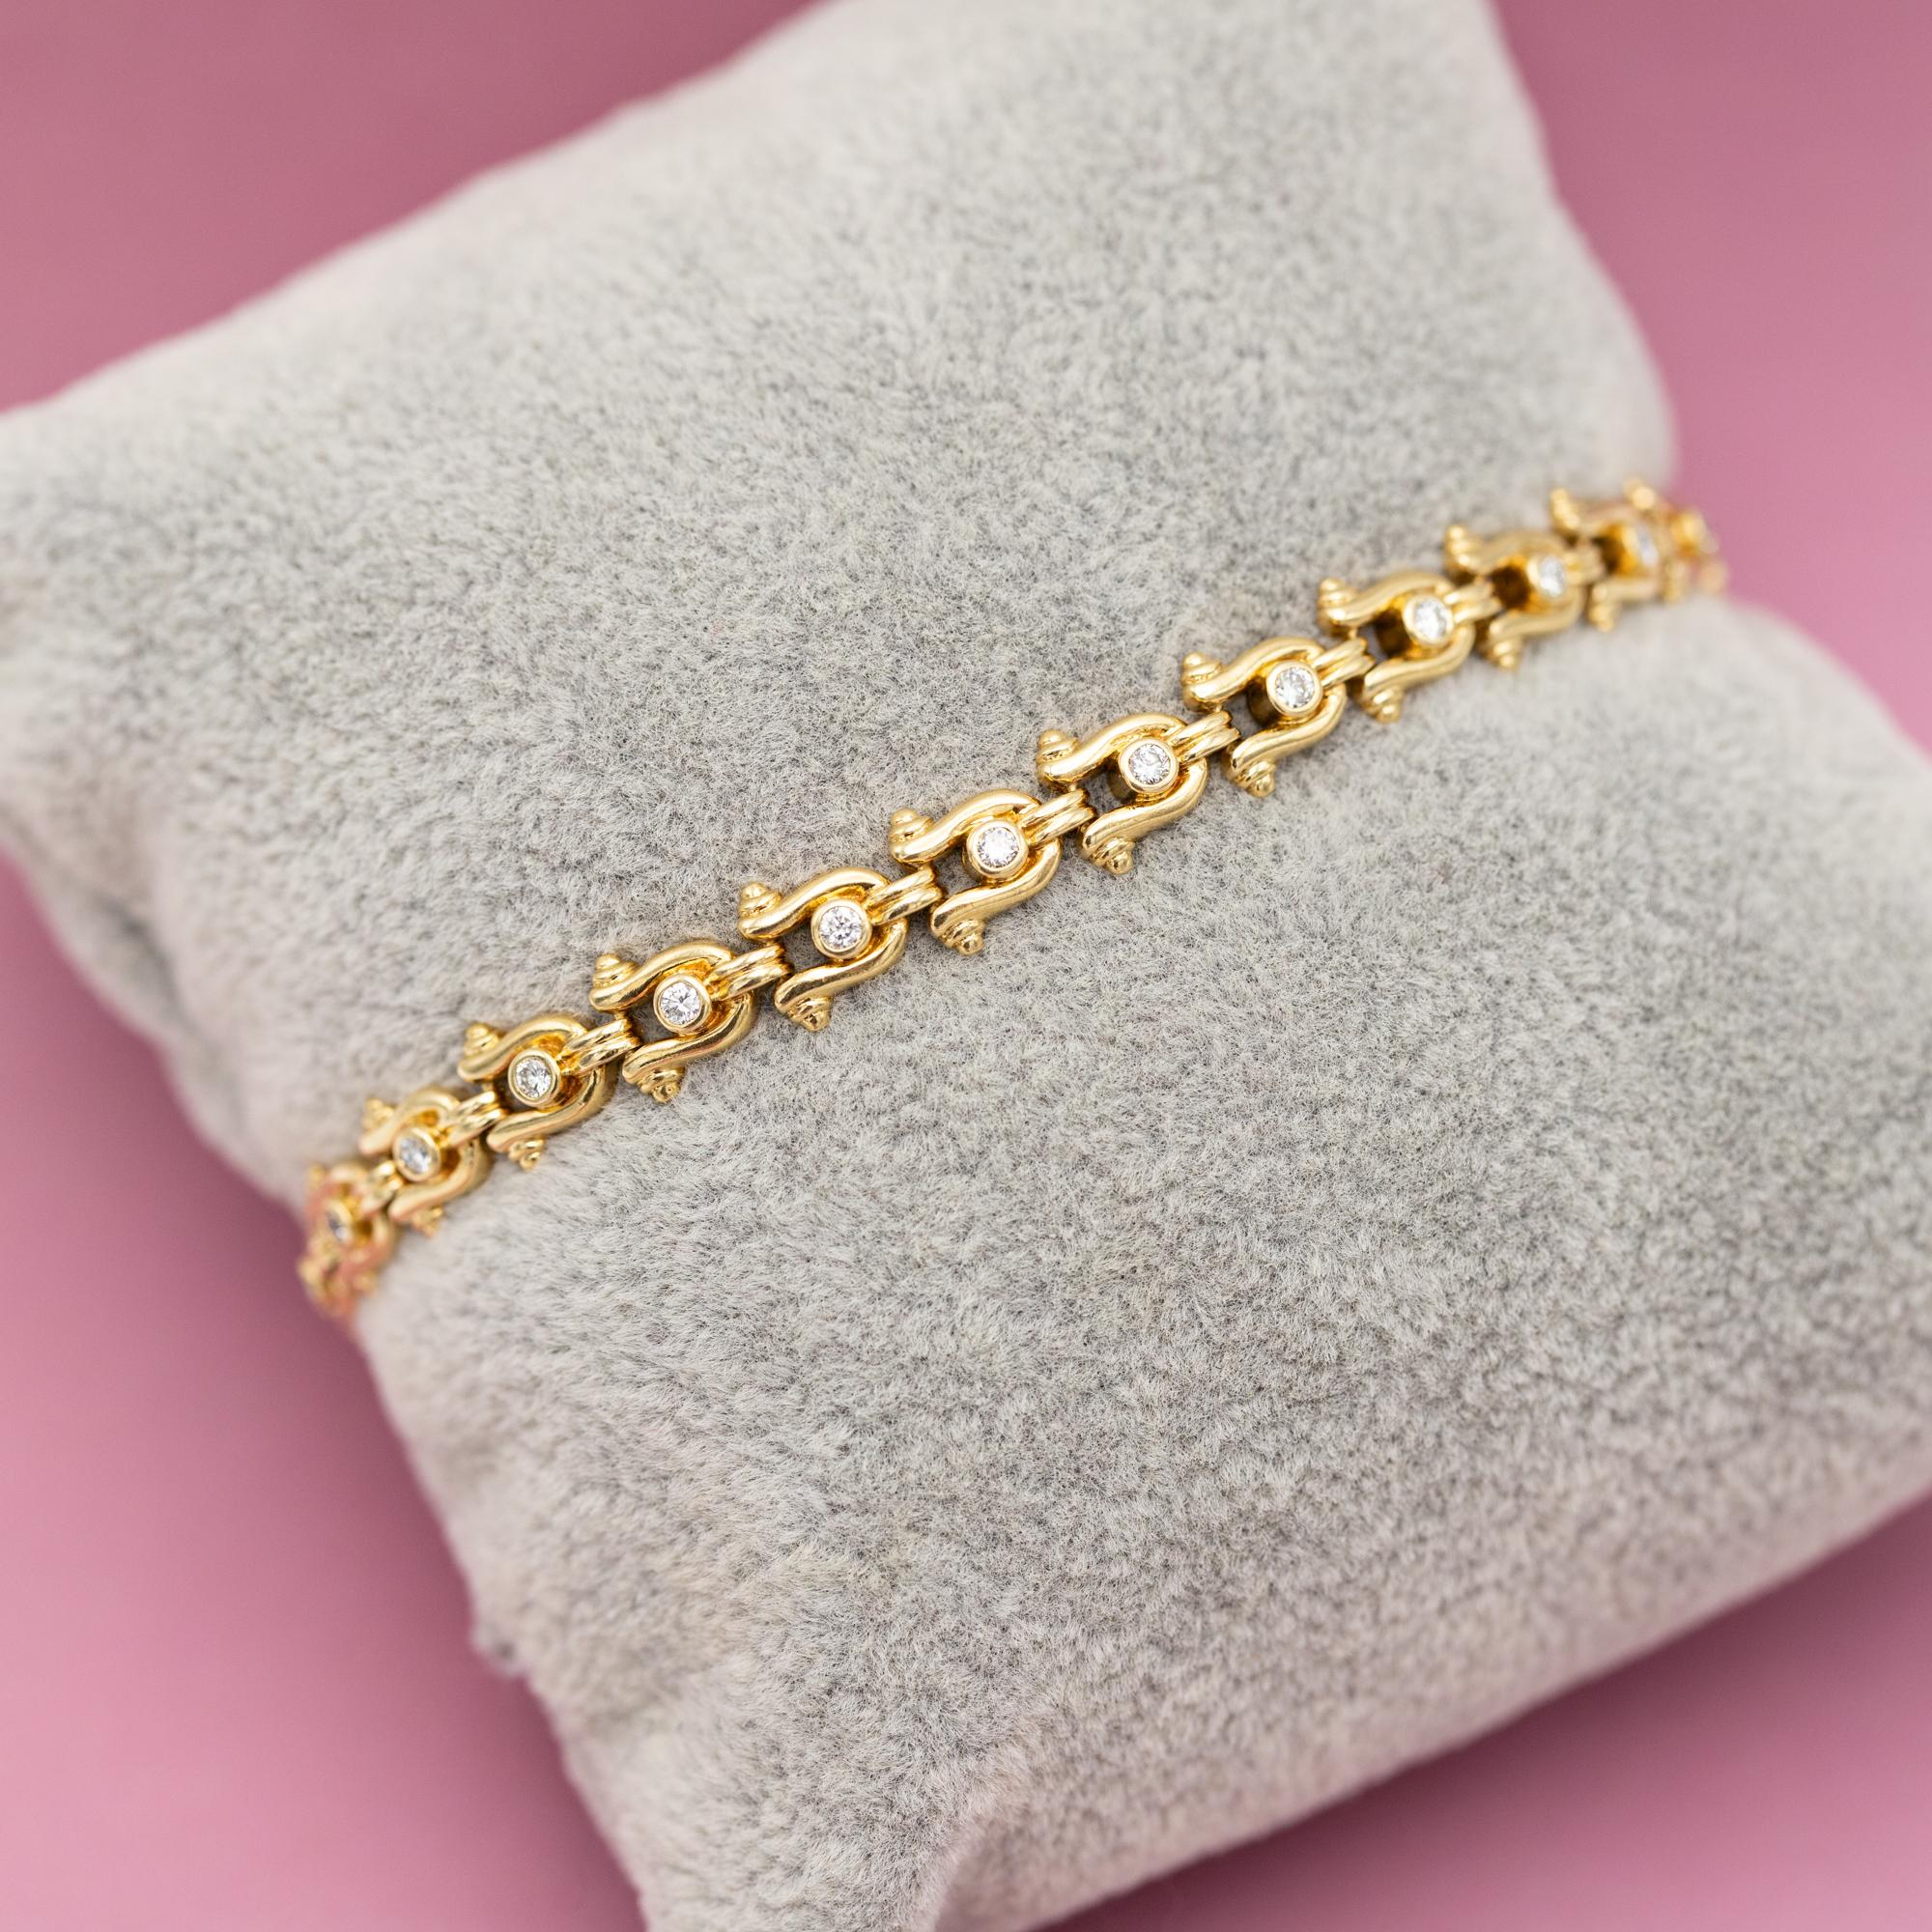 Nous vous proposons à la vente ce bracelet de tennis vintage royal et élégant. Ce bracelet est réalisé en or jaune 18 carats et porte le poinçon 750. Vingt-cinq diamants taillés en brillant garantissent son allure élégante et son aspect royal. Leur